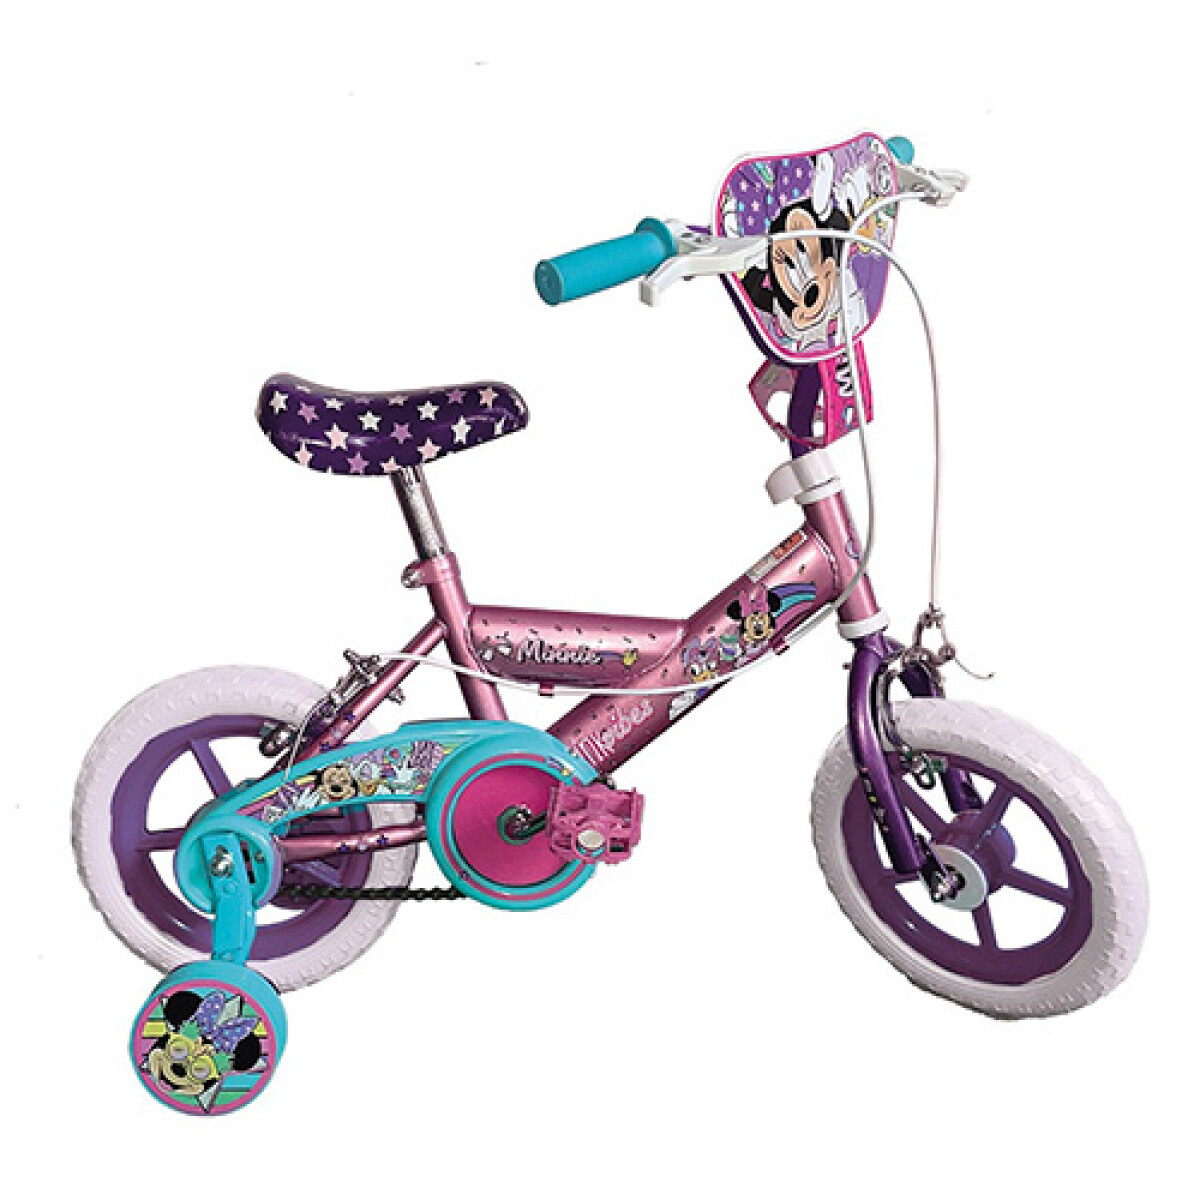 Bicicleta Original Disney Minnie Rodado 12 - 001 